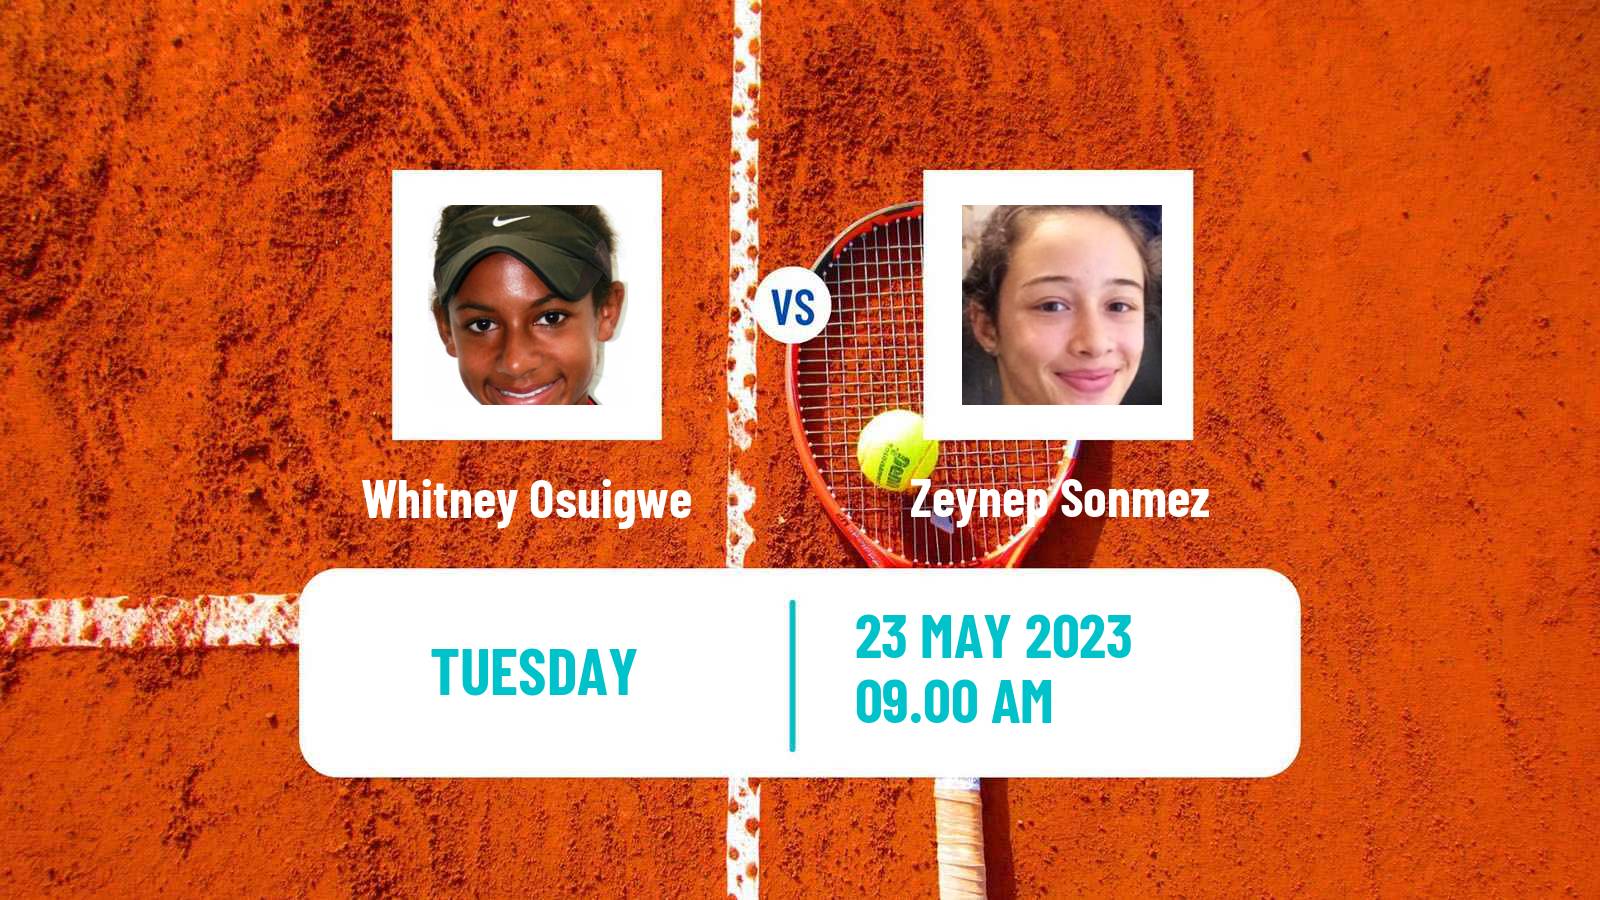 Tennis ITF W60 Grado Women Whitney Osuigwe - Zeynep Sonmez